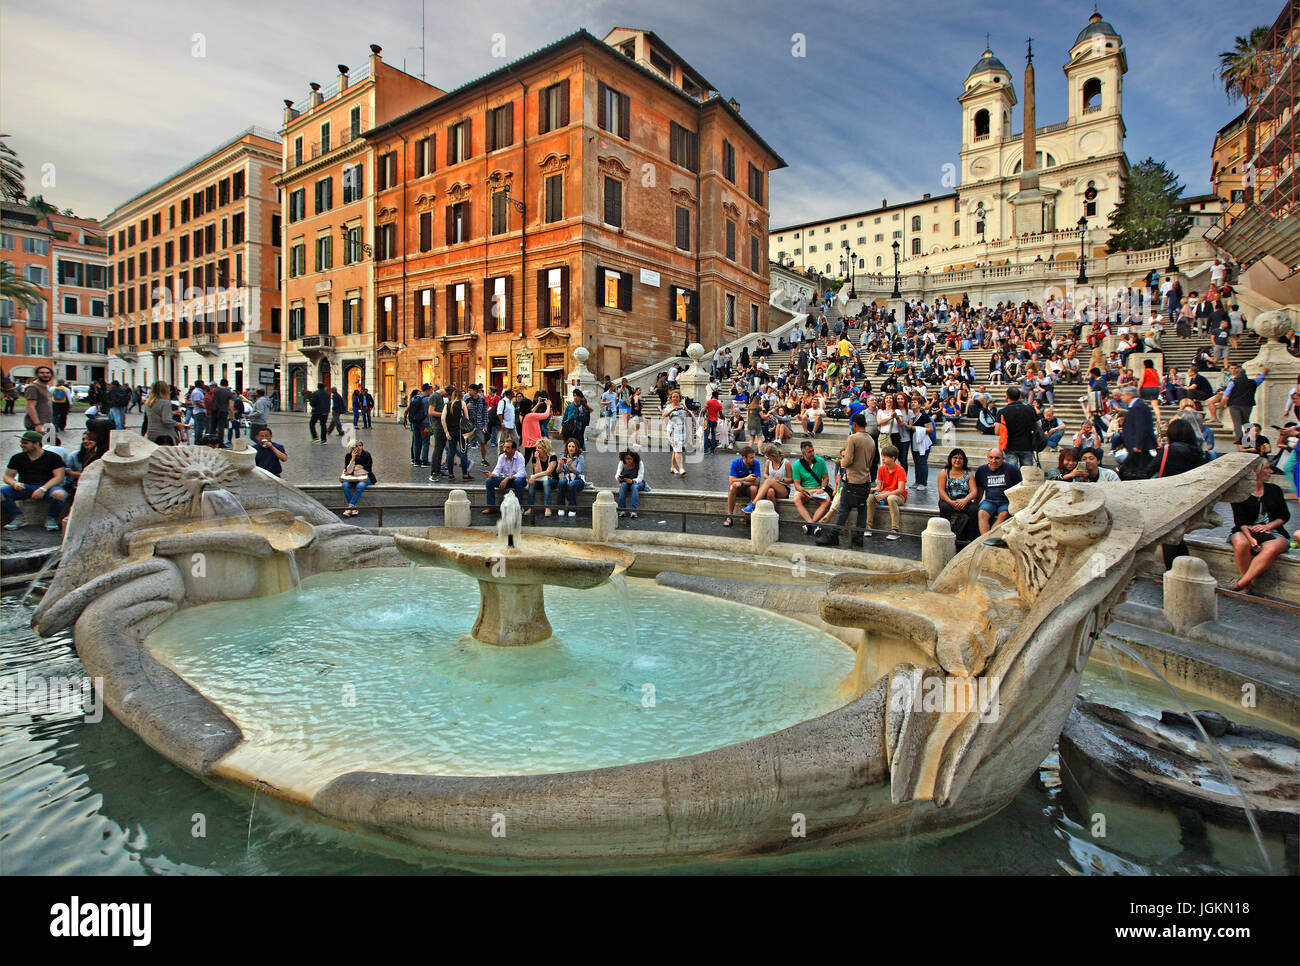 Piazza di Spagna, Fontana della Barcaccia and the Spanish Steps, Rome, Italy Stock Photo